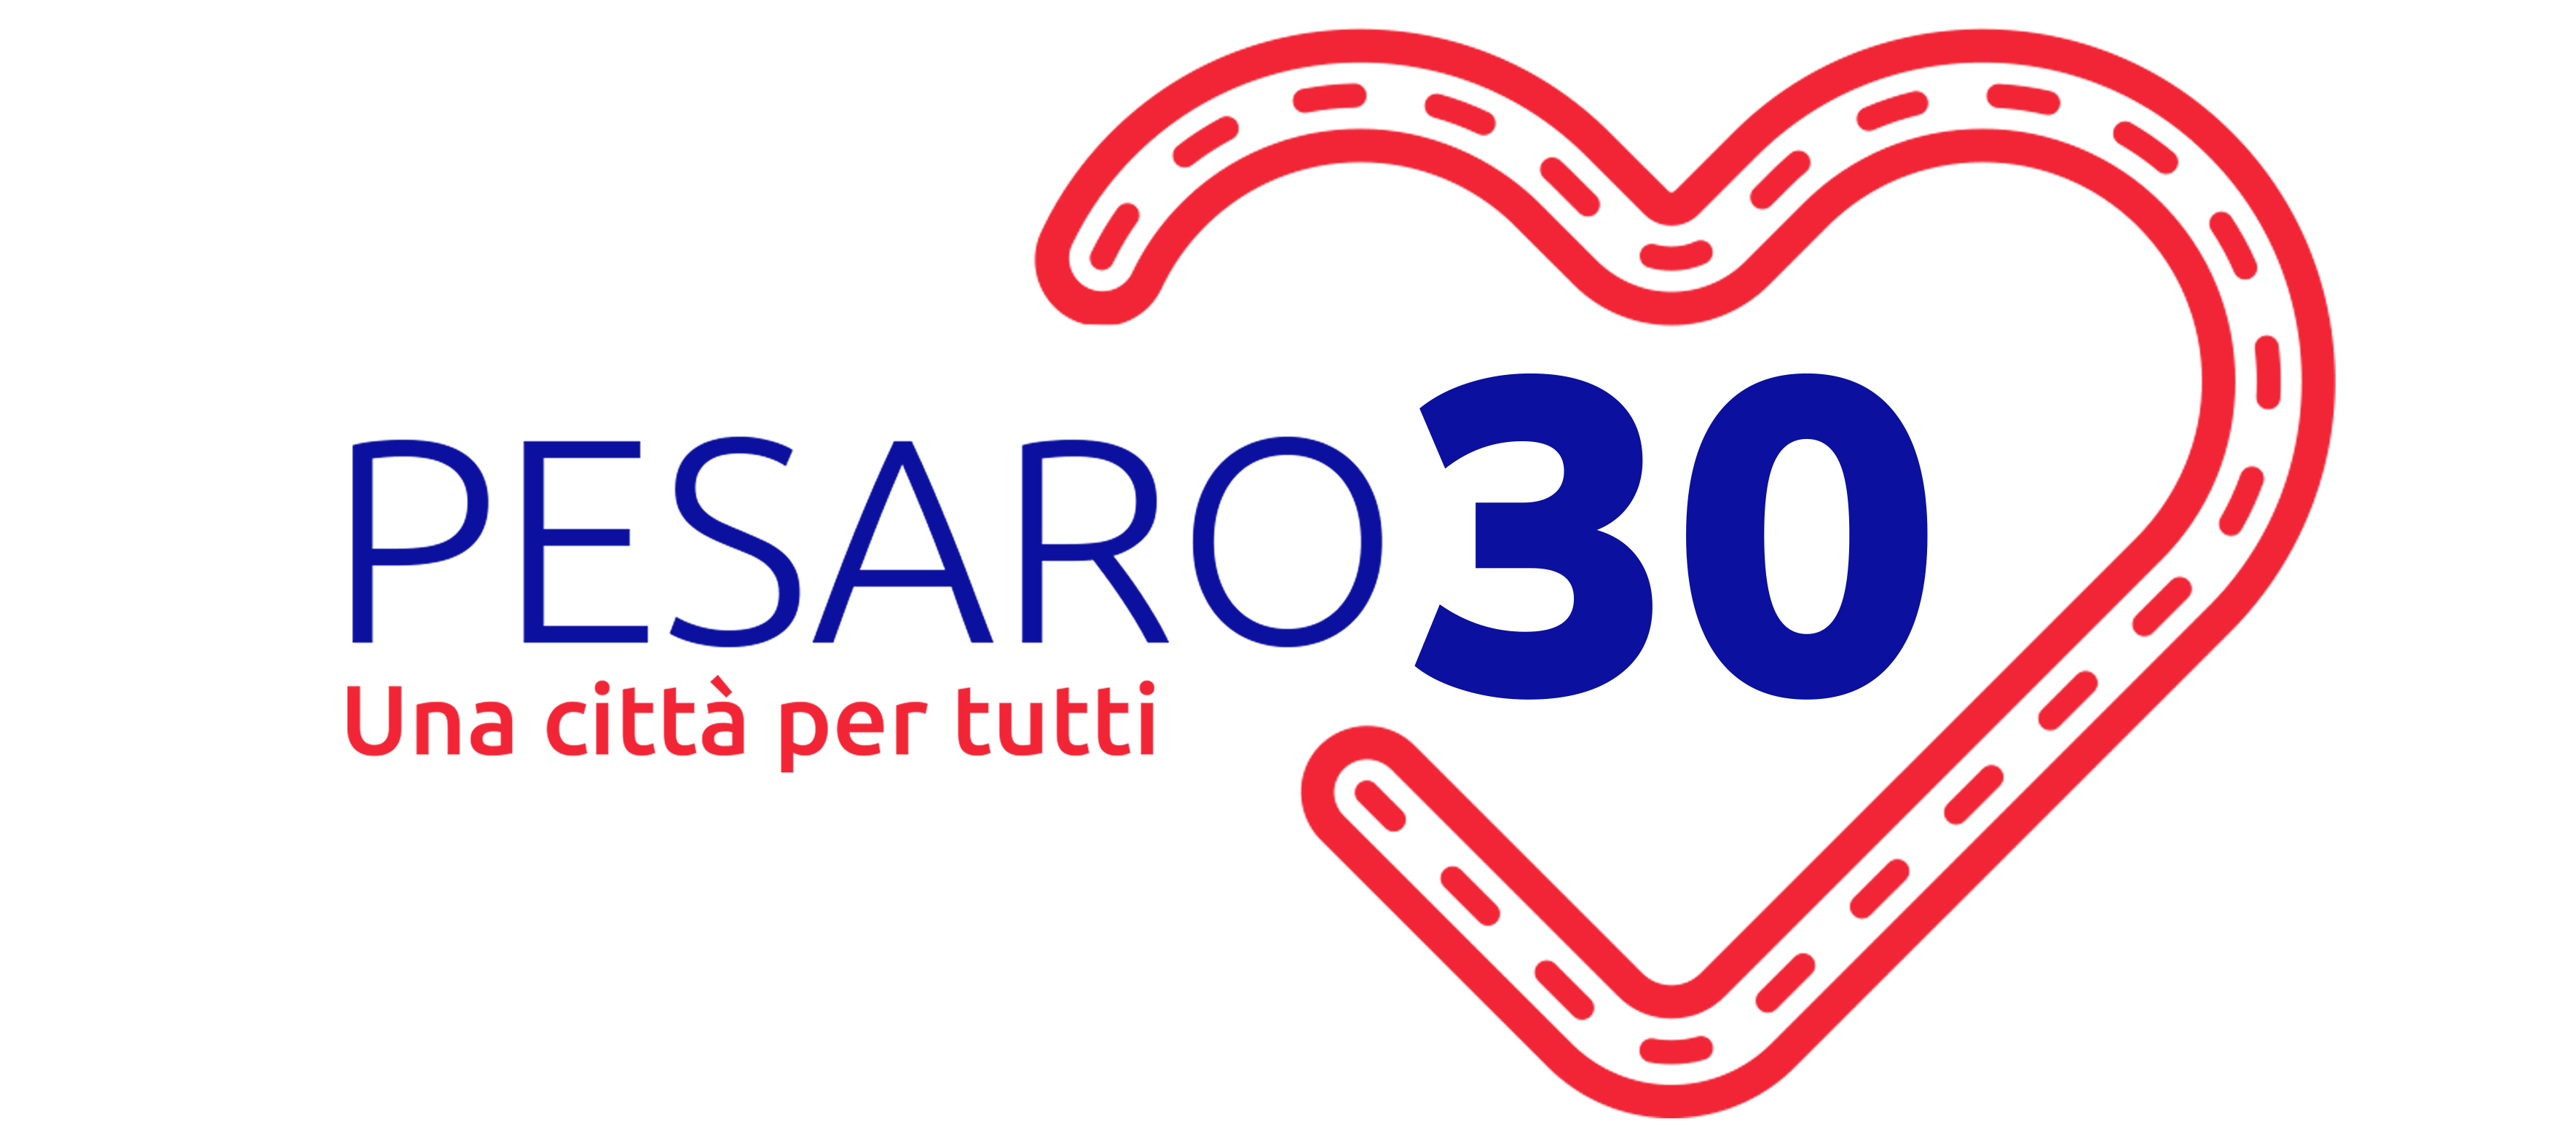 Pesaro30 – Una città per tutti